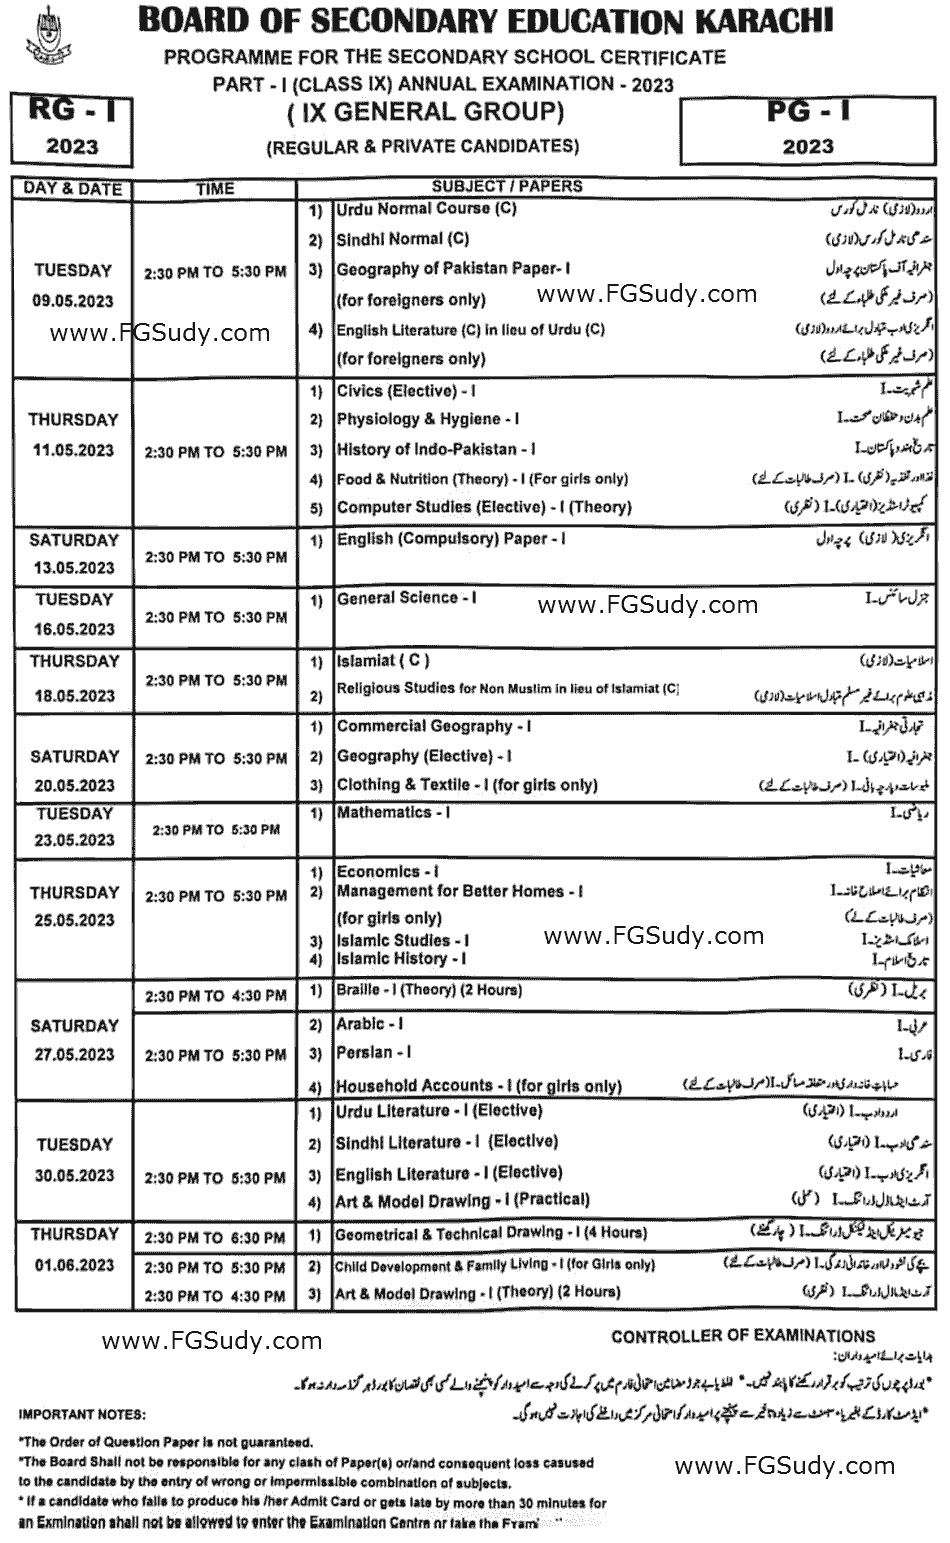 karachi-board-9th-class-date-sheet-2023-general-group-image